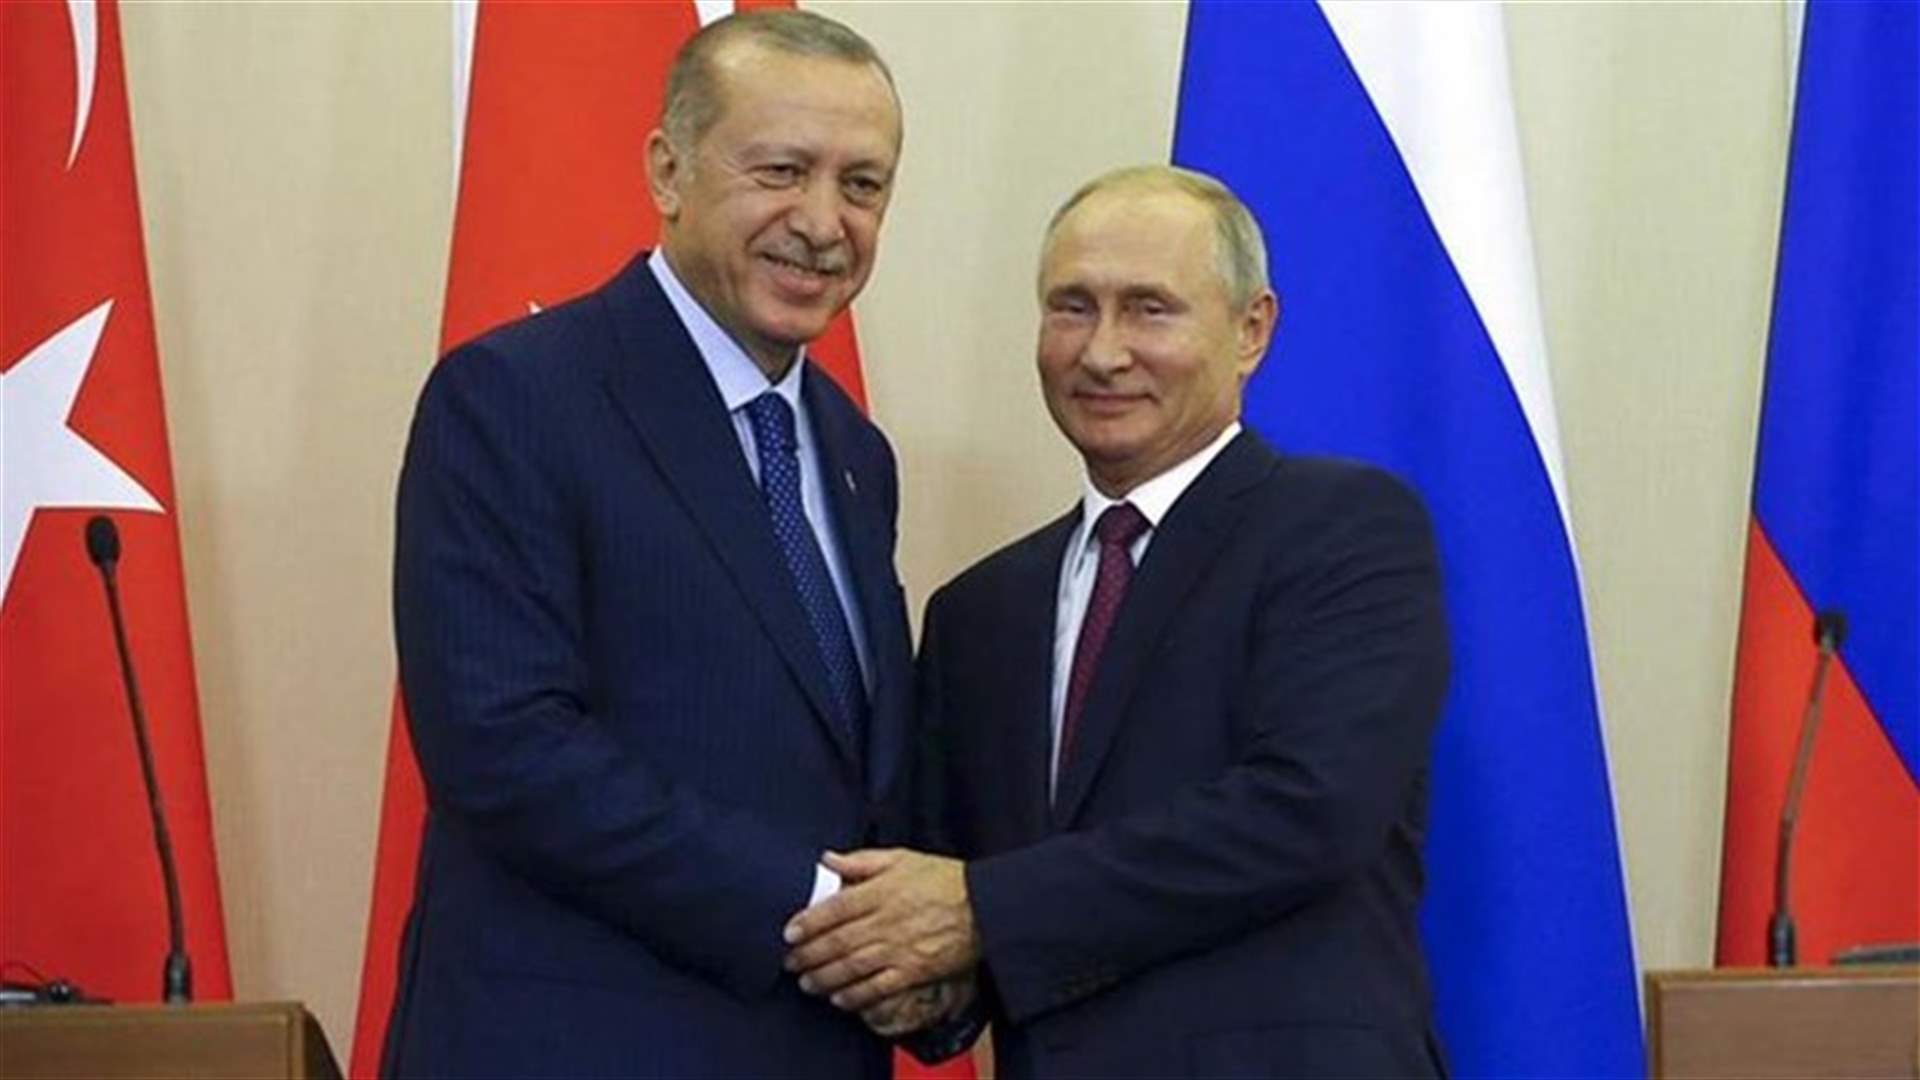 Erdogan tells Putin Syrian offensive is causing humanitarian crisis